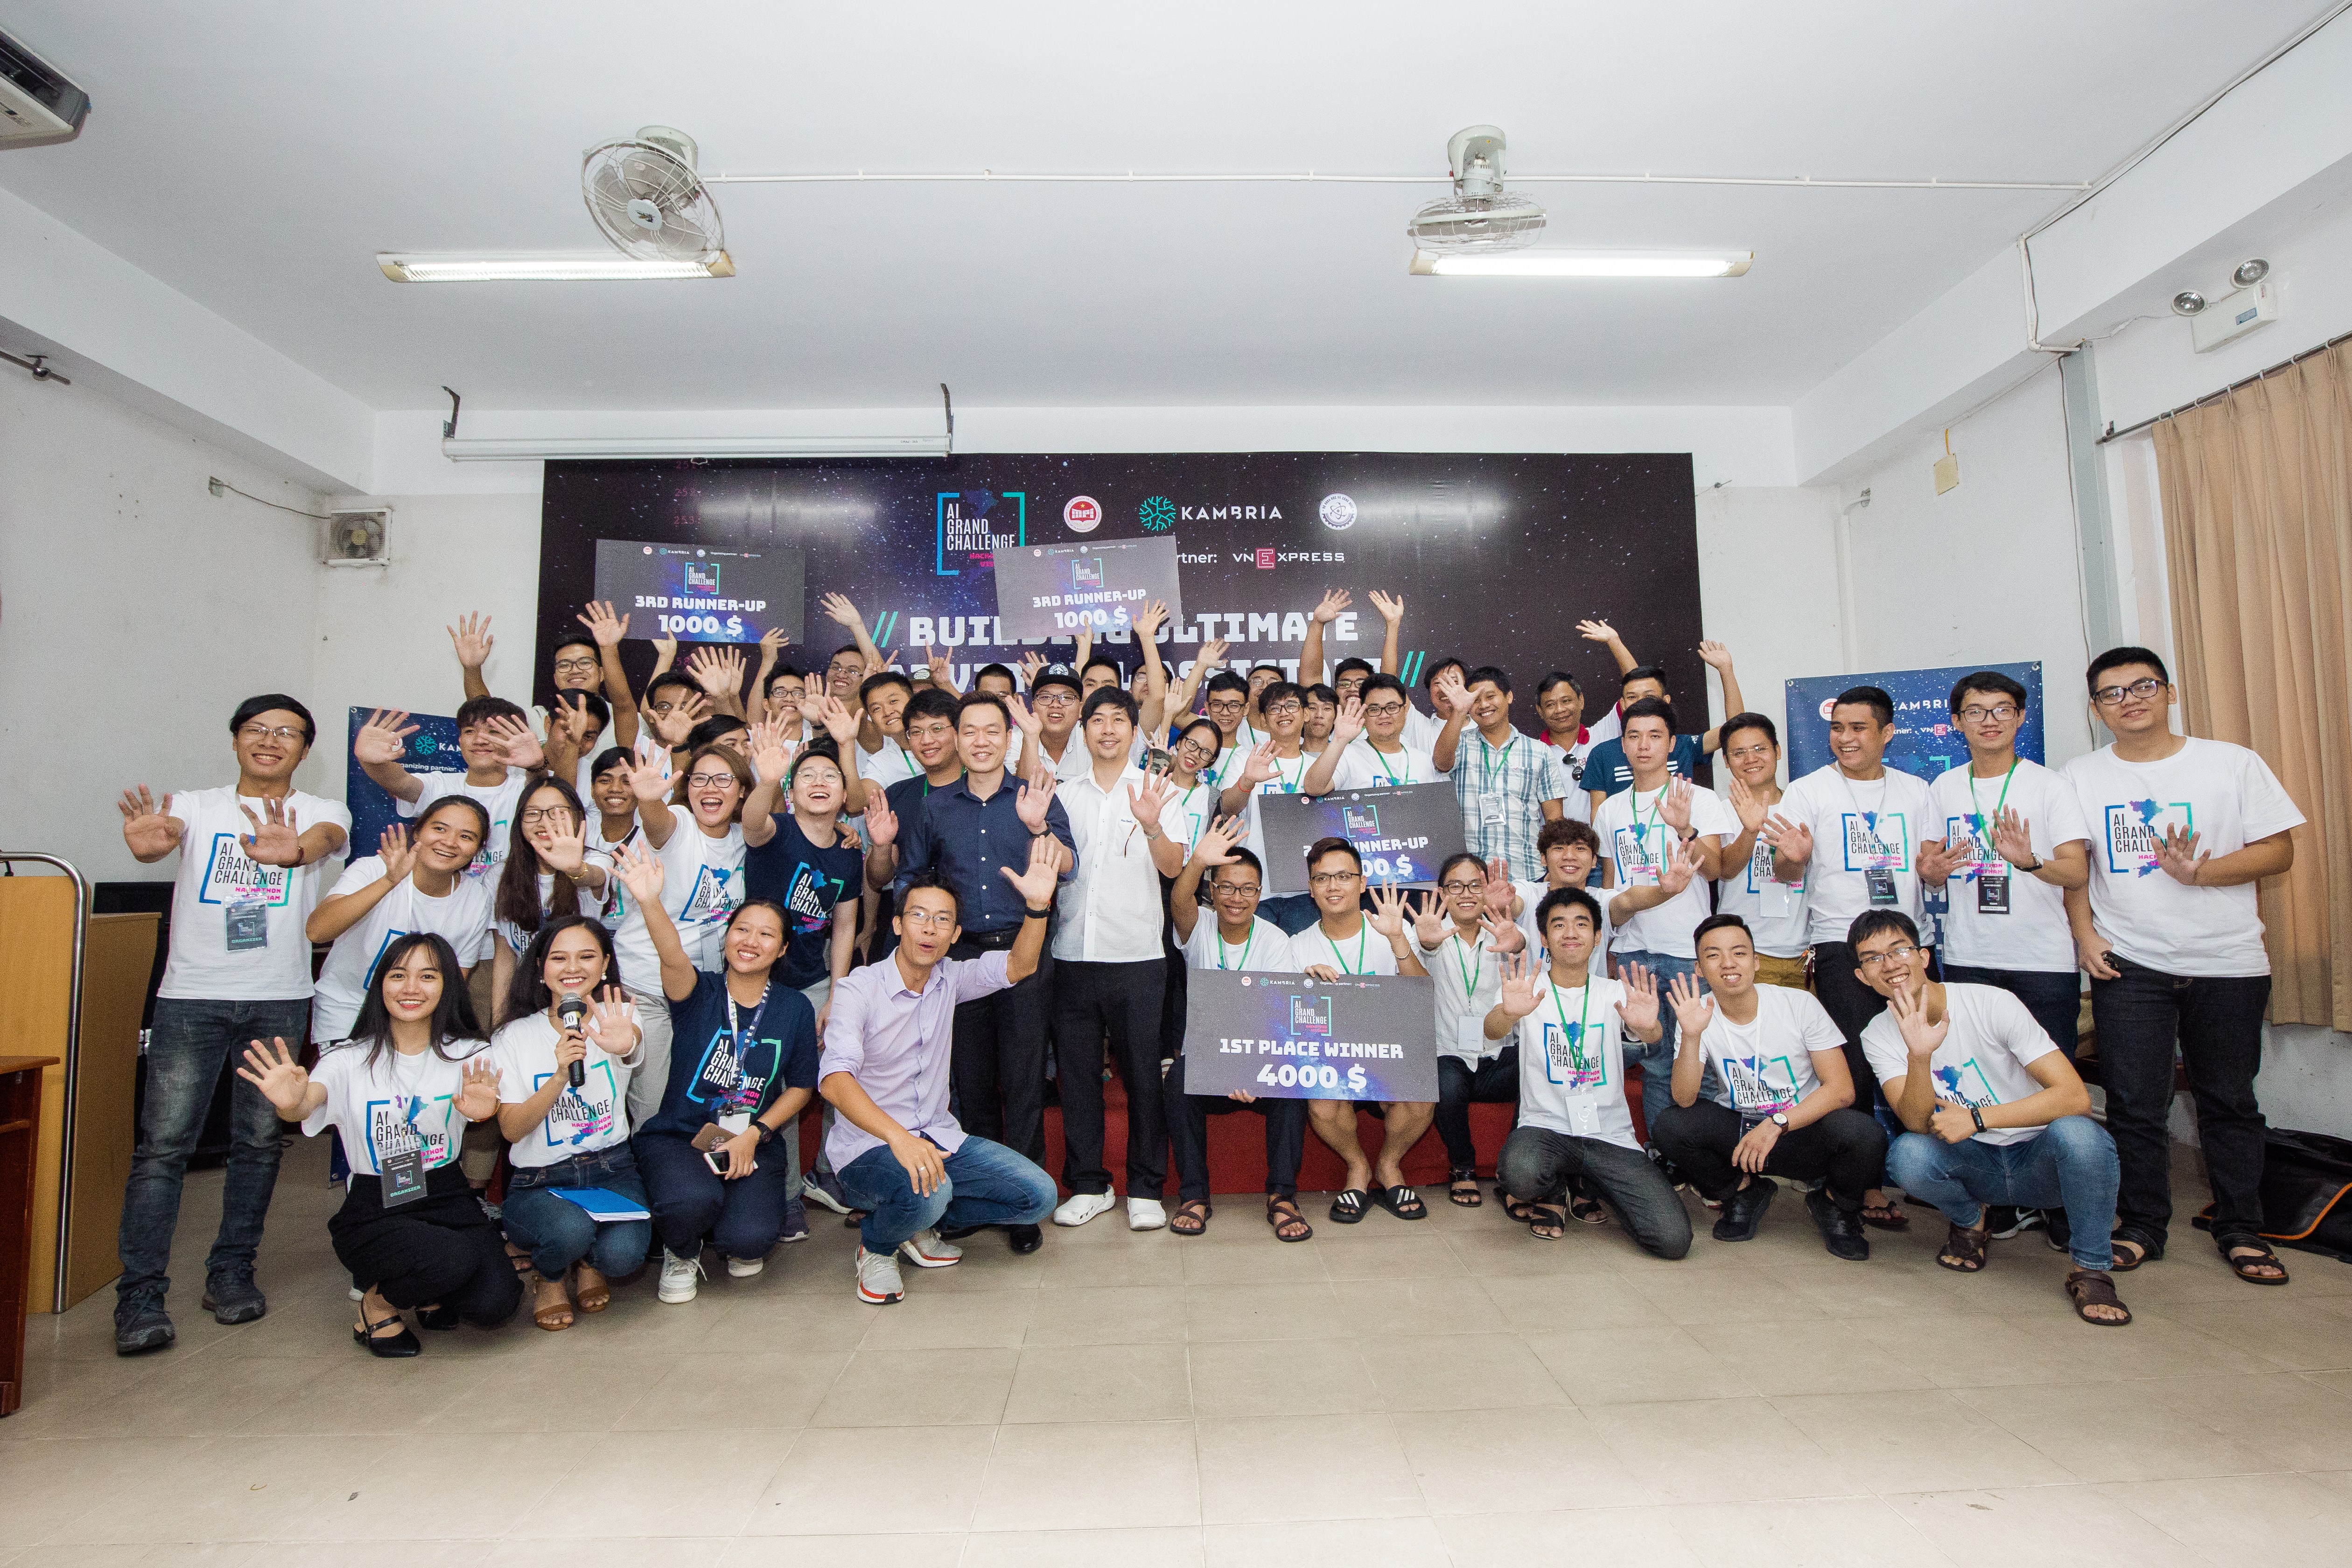 70 vietnam hackathon participants posing for a photo